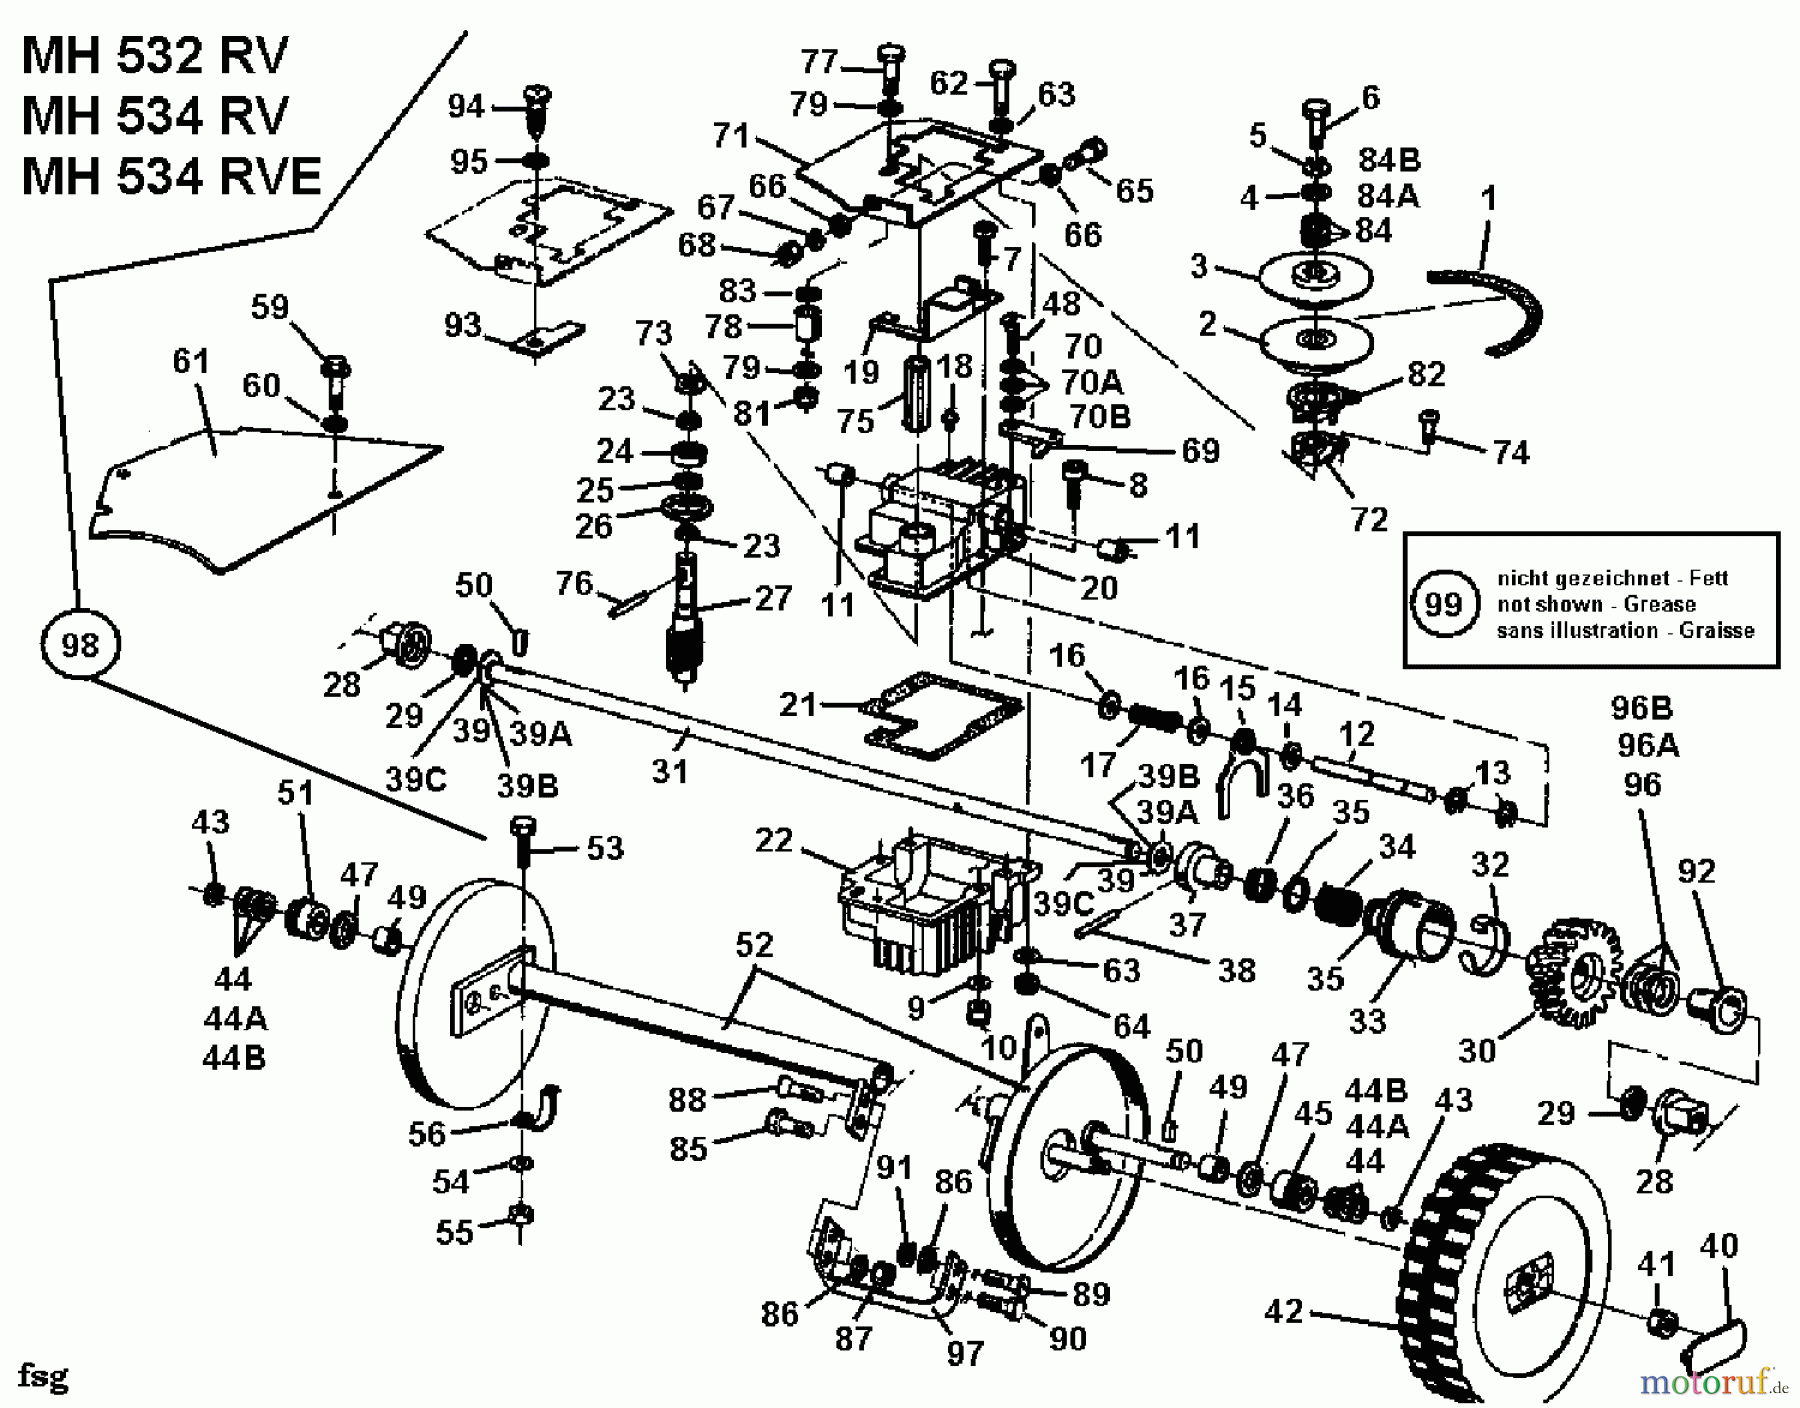  Gutbrod Motormäher mit Antrieb MH 534 RV 04007.02  (1993) Getriebe, Räder